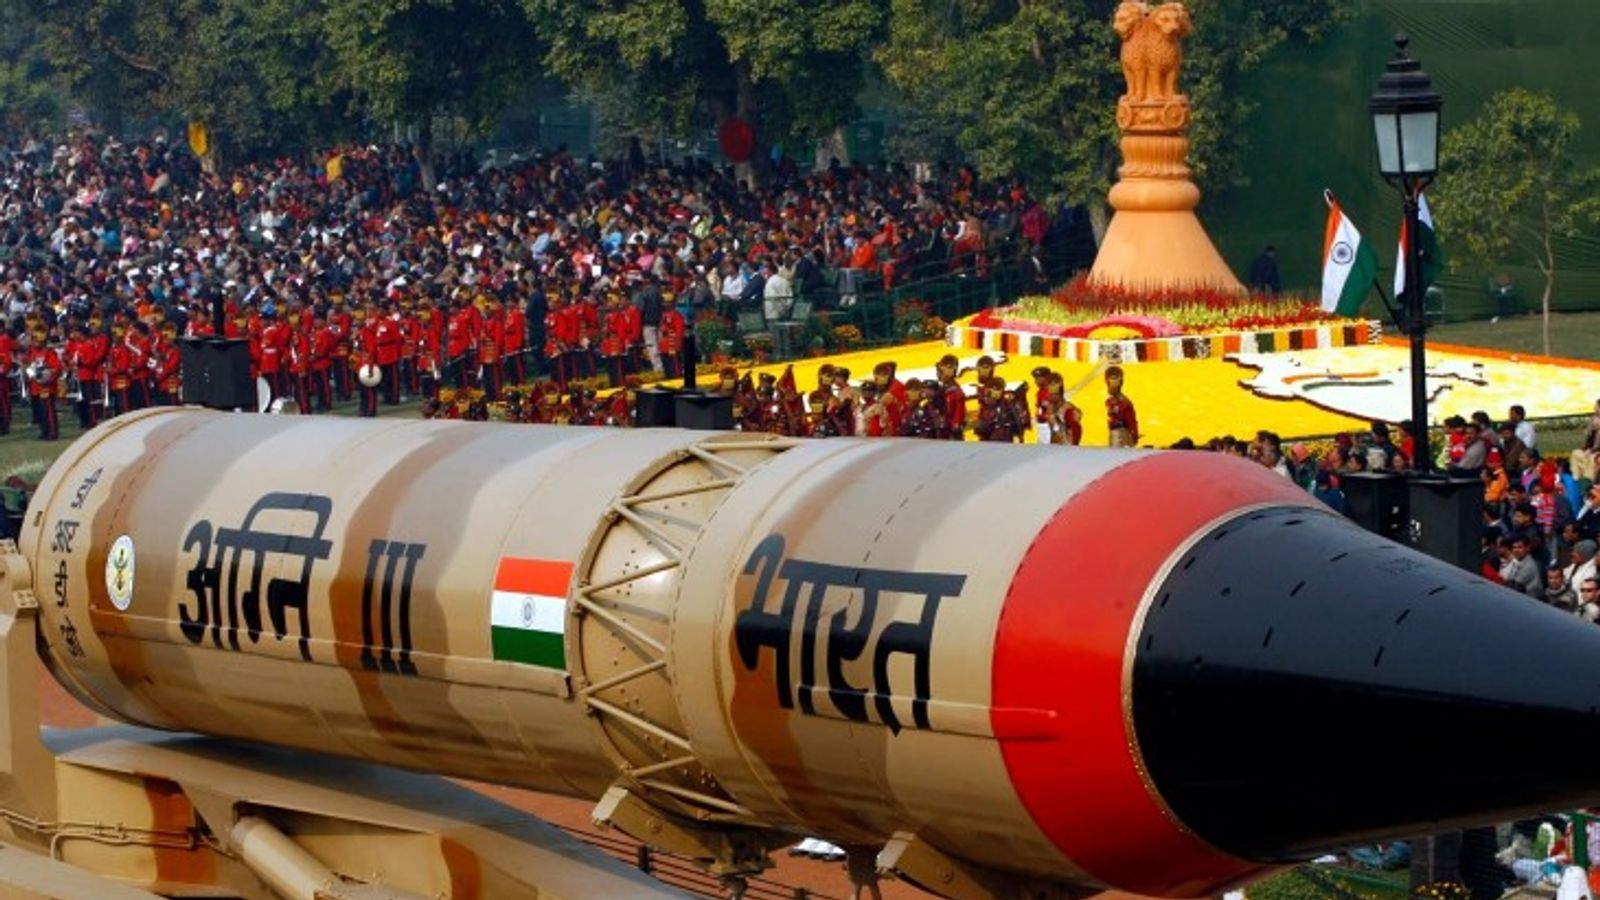 New Delhi:भारत की परमाणु नीति का फोकस पाक नहीं चीन,अमेरिकी रिपोर्ट में दावा- भारतीय मिसाइलों की रेंज में चीनी शहर, जल्द तैनात होंगे एडवांस हथियार